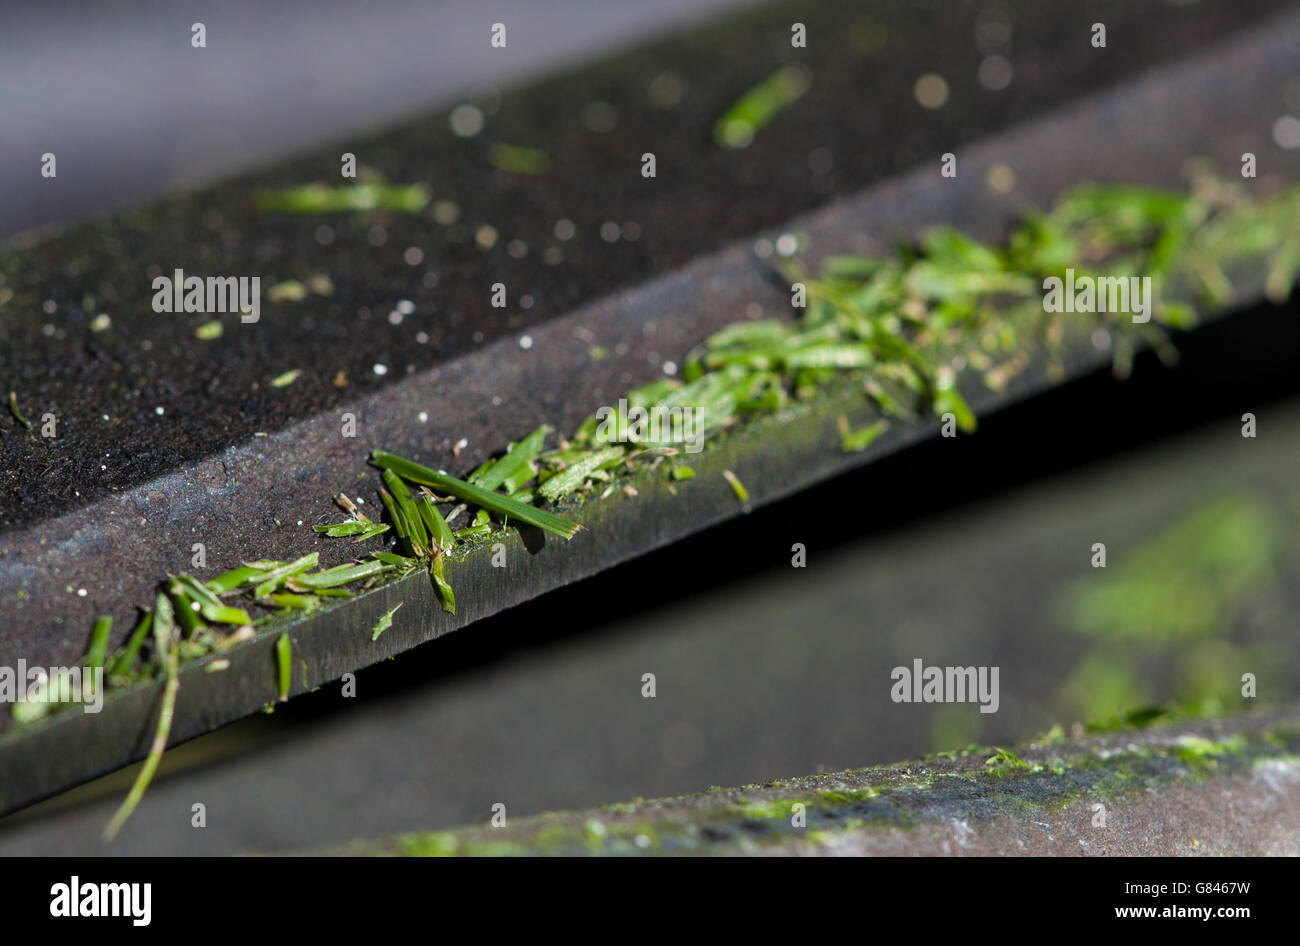 Primo piano macro Lens photo mostra le talee d'erba su una lama di tosaerba durante il quarto giorno del Wimbledon Championships presso l'All England Lawn Tennis and Croquet Club di Wimbledon. Foto Stock